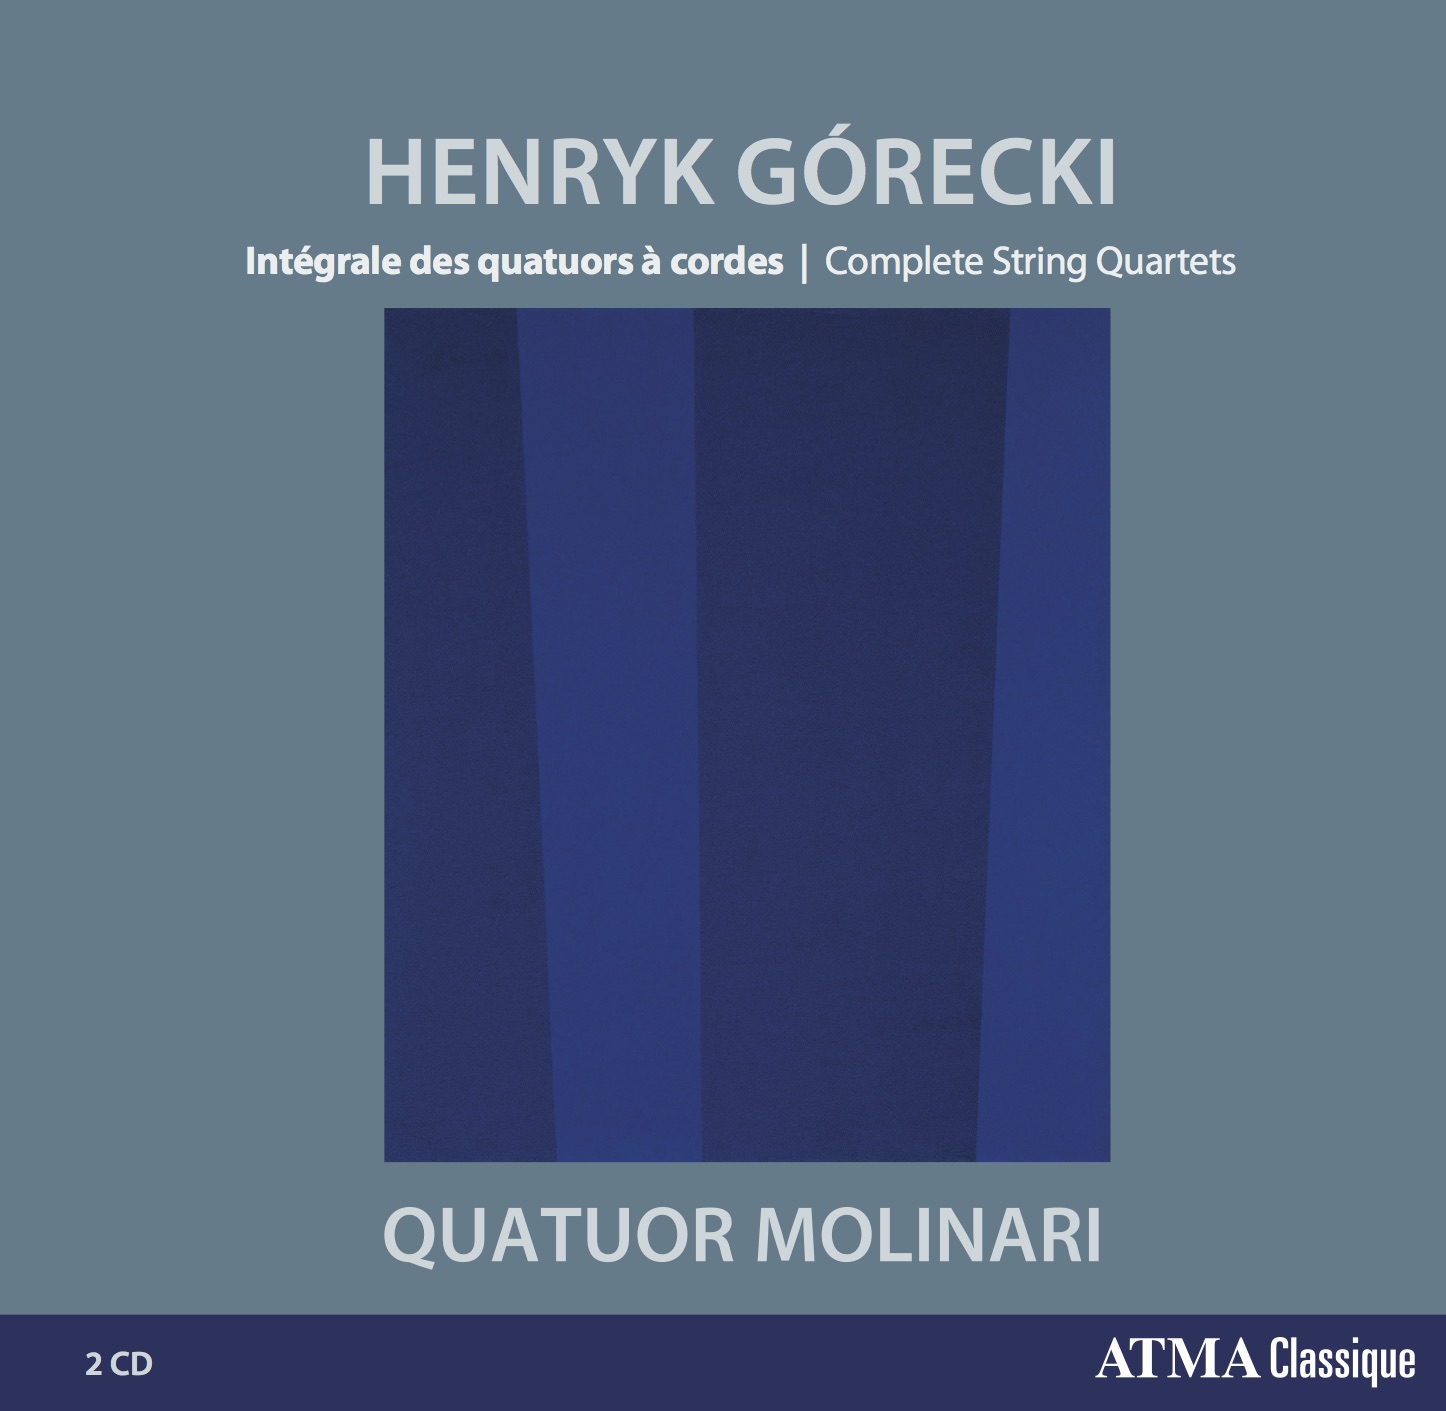 Album-CD-Molinari-Gorecki-Atma